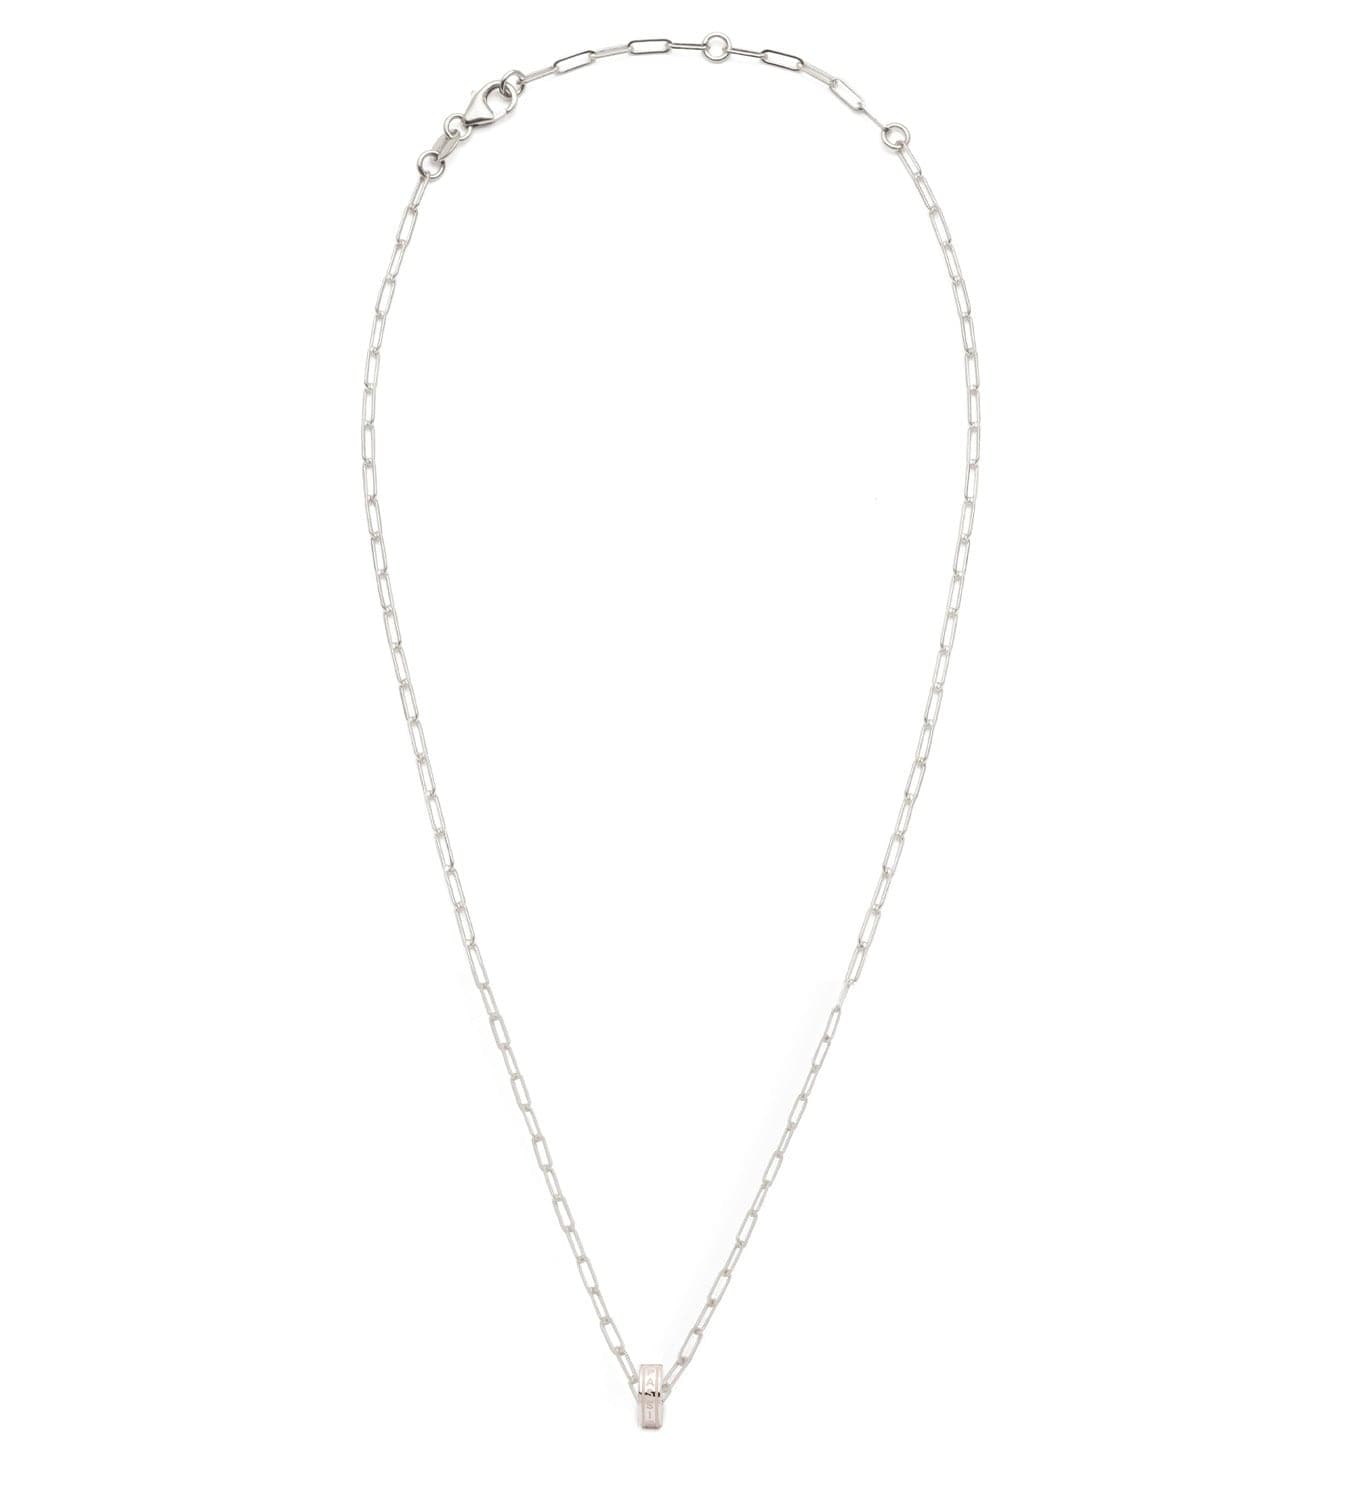 Vivacity : Heart Beat Super Fine Clip Chain Necklace White Gold